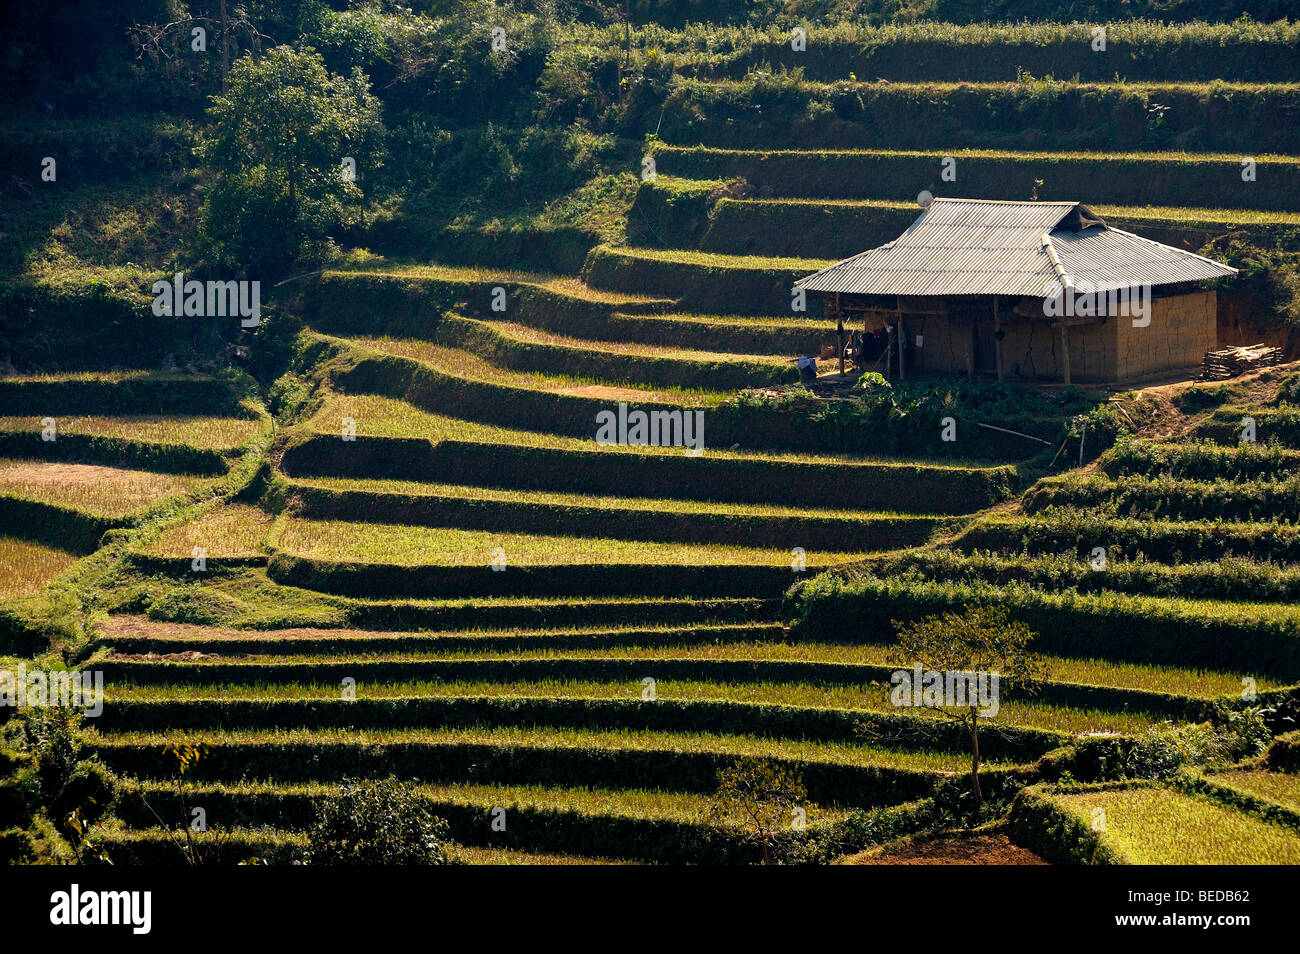 Hütte auf Reisterrassen, Bac Ha, Nord-Vietnam, Südostasien Stockfoto